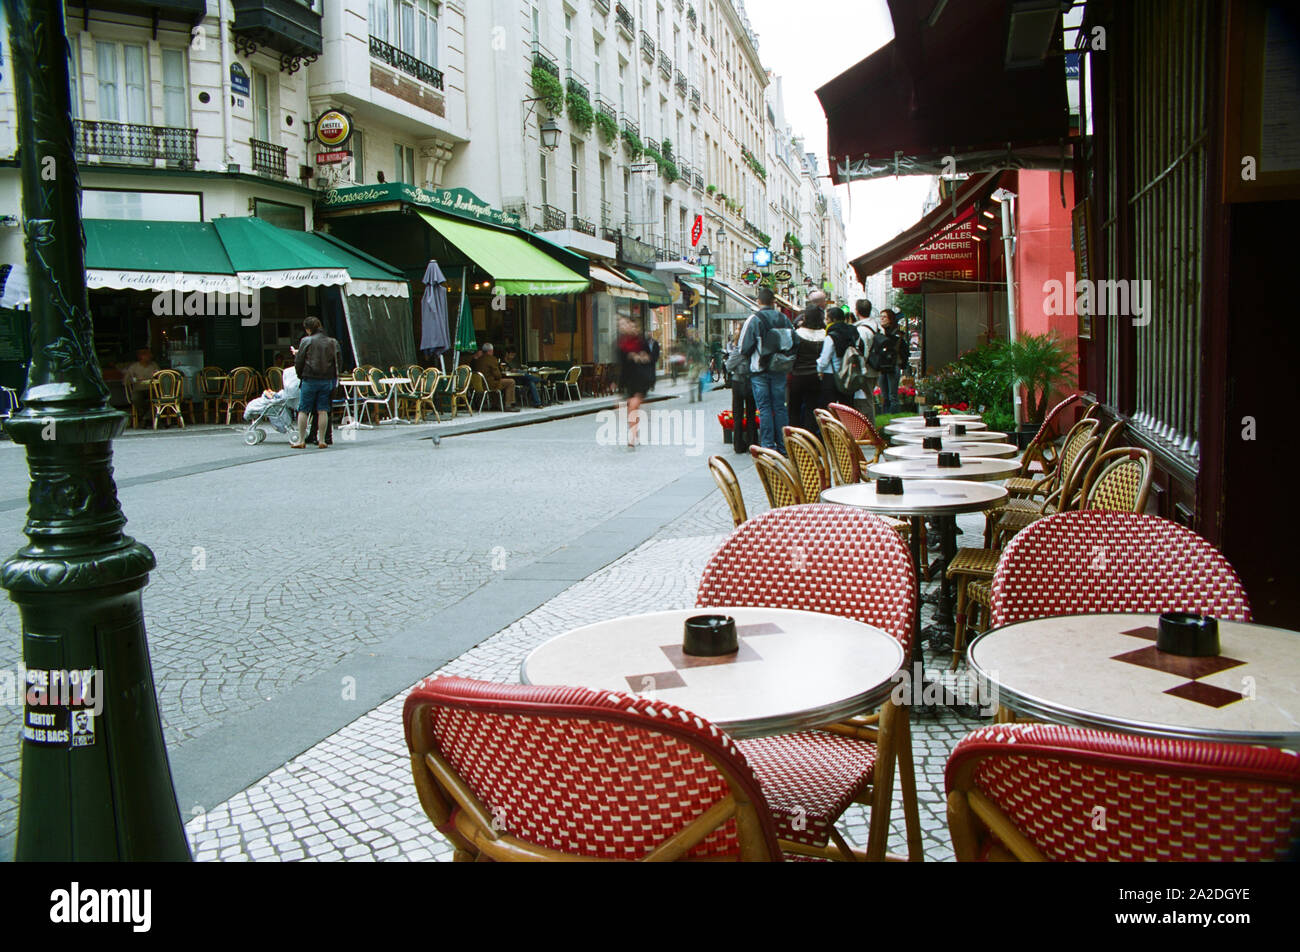 Paris street scene - Rue Montorgueil Stock Photo